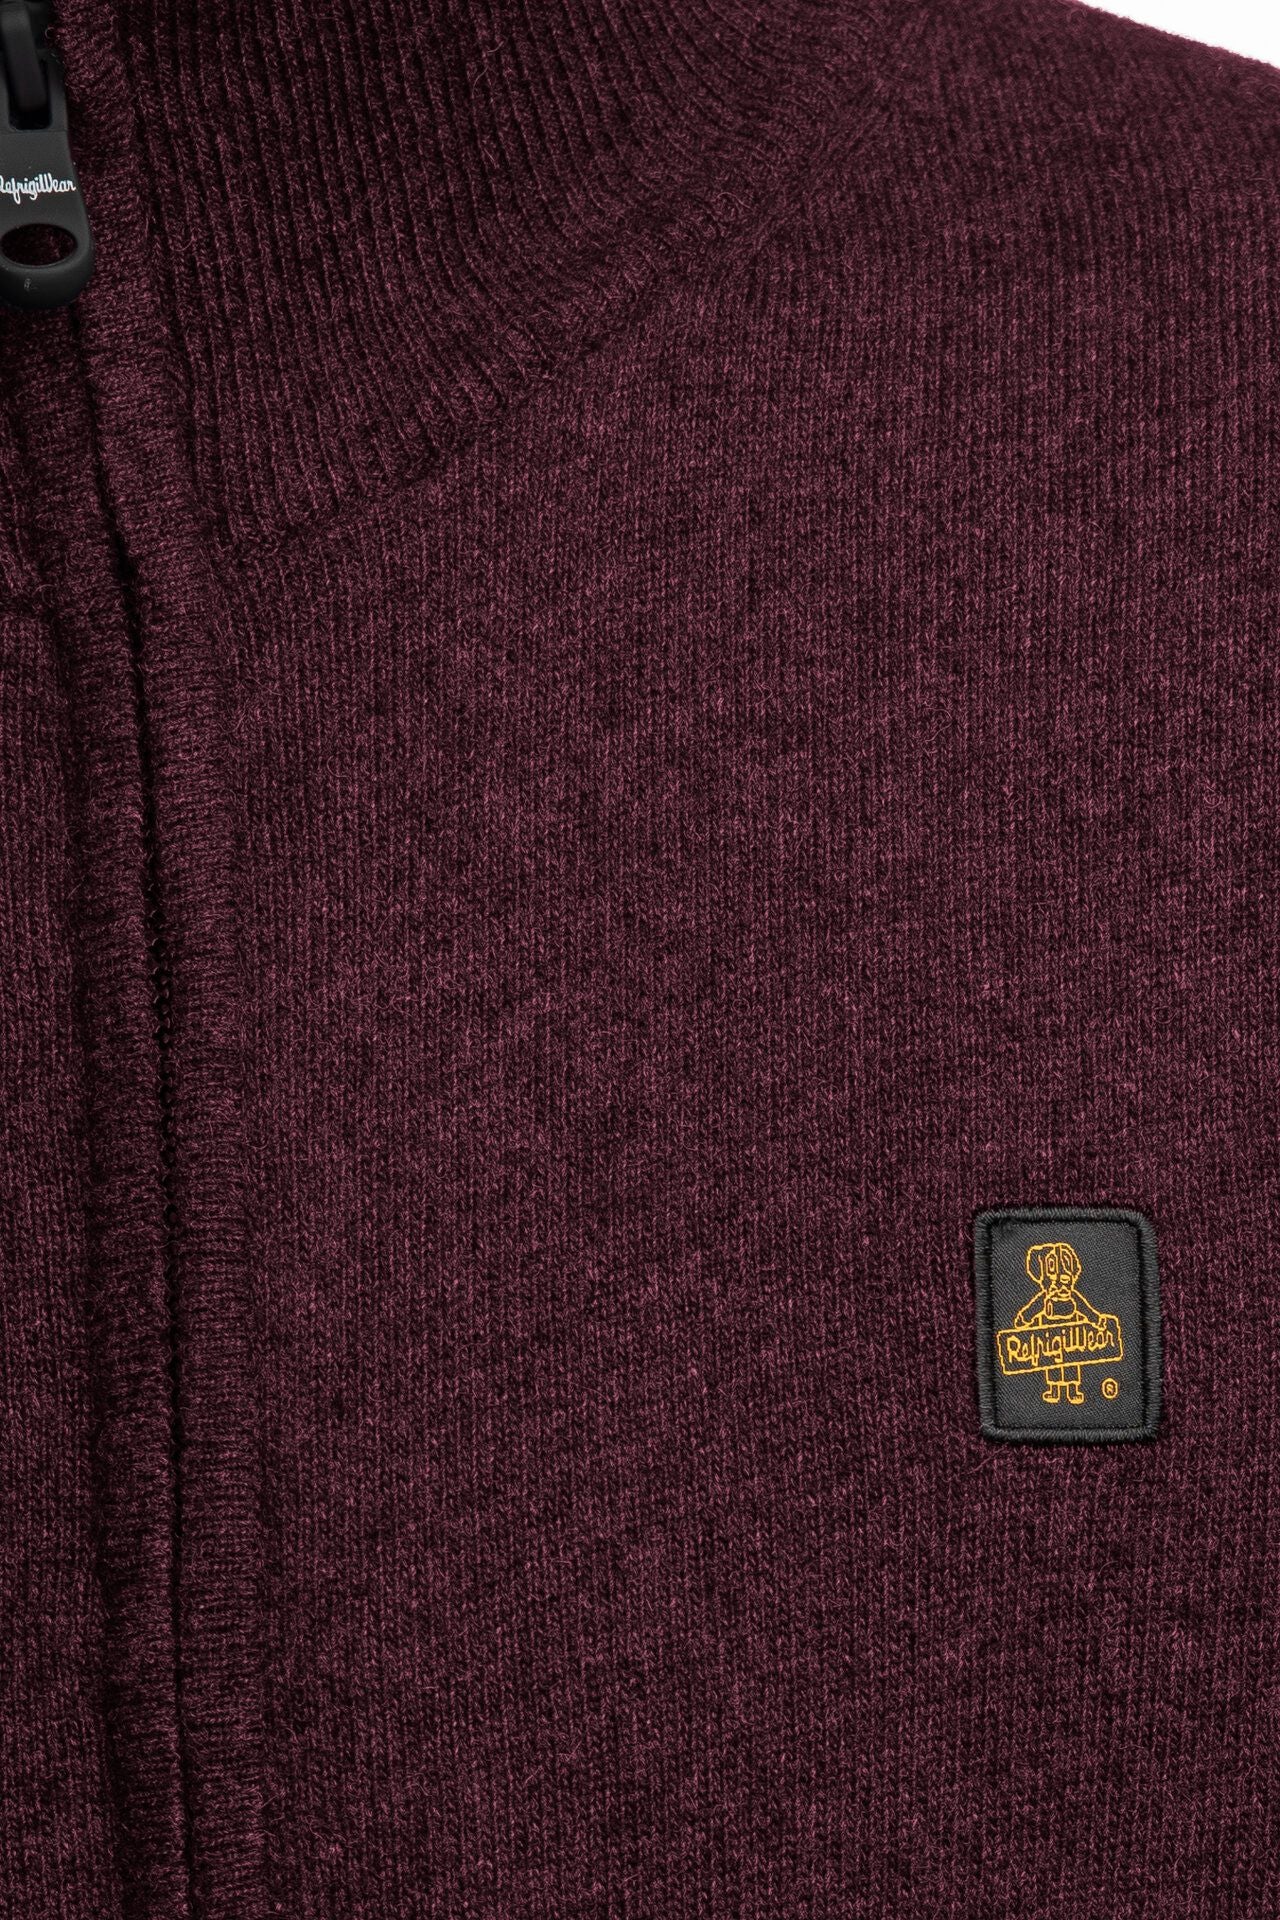 Burgundy Wool-Cashmere Blend High-Collar Cardigan